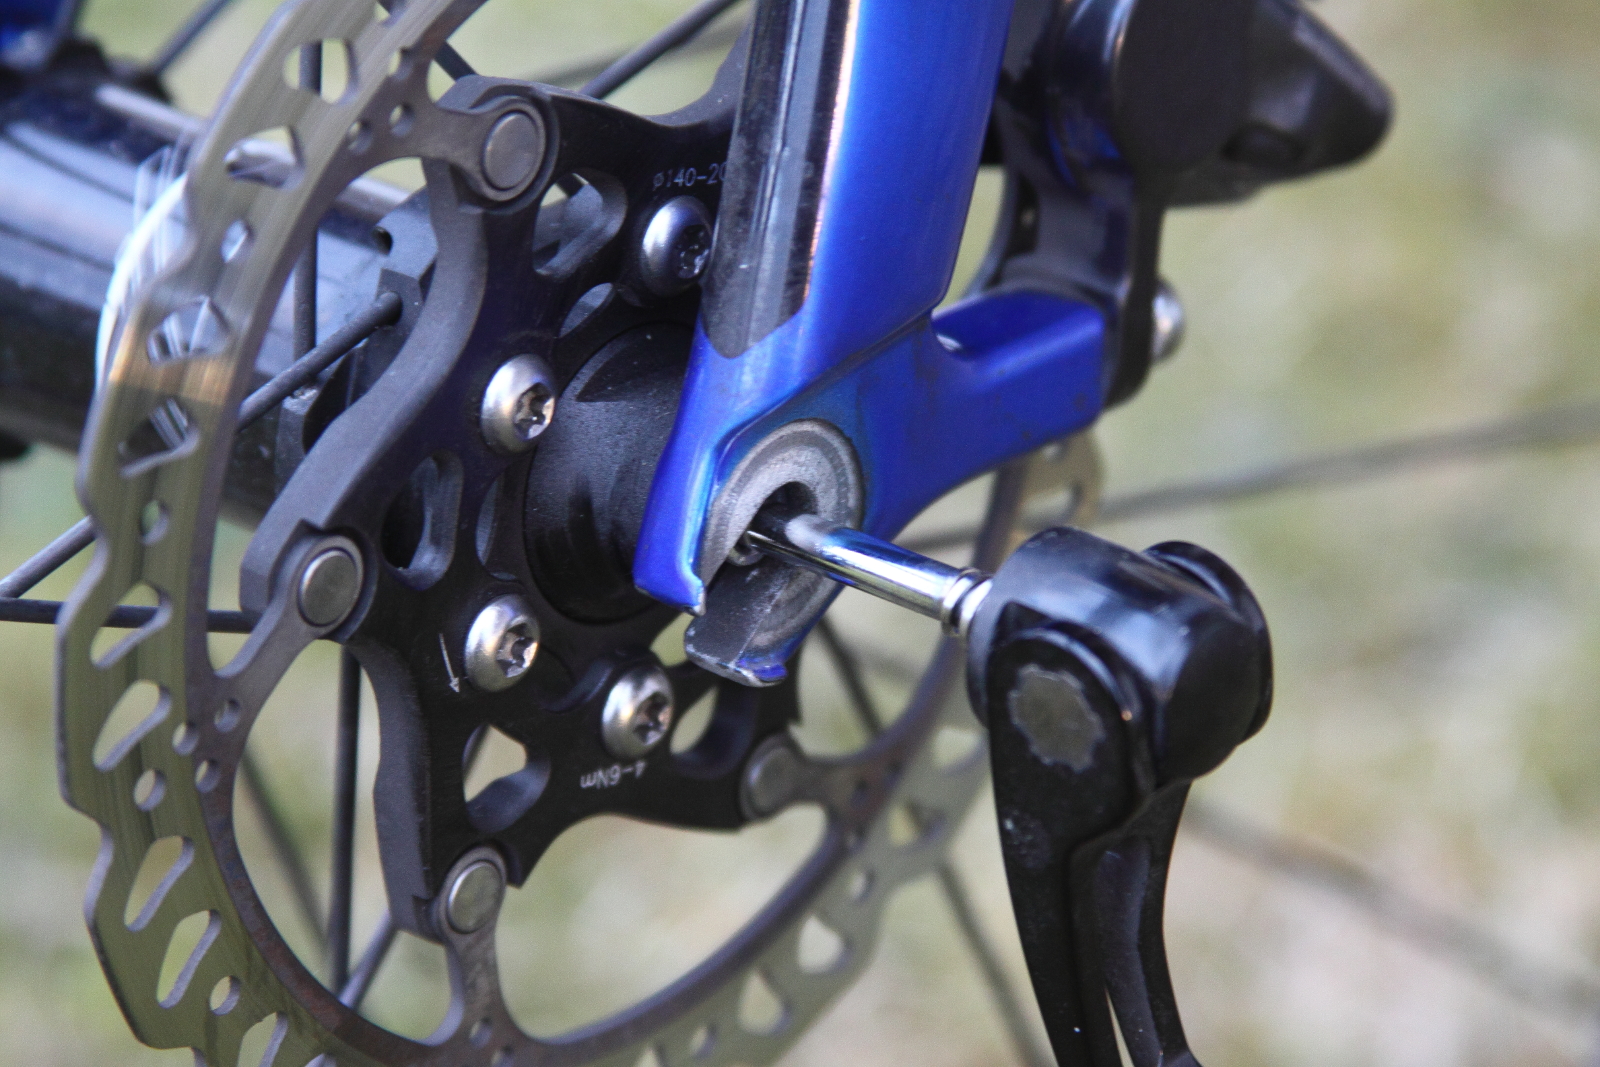 Scheibenbremse Bremse Fahrrad Für Hydraulik Mit Rotor Scheibe Zuverlässig 